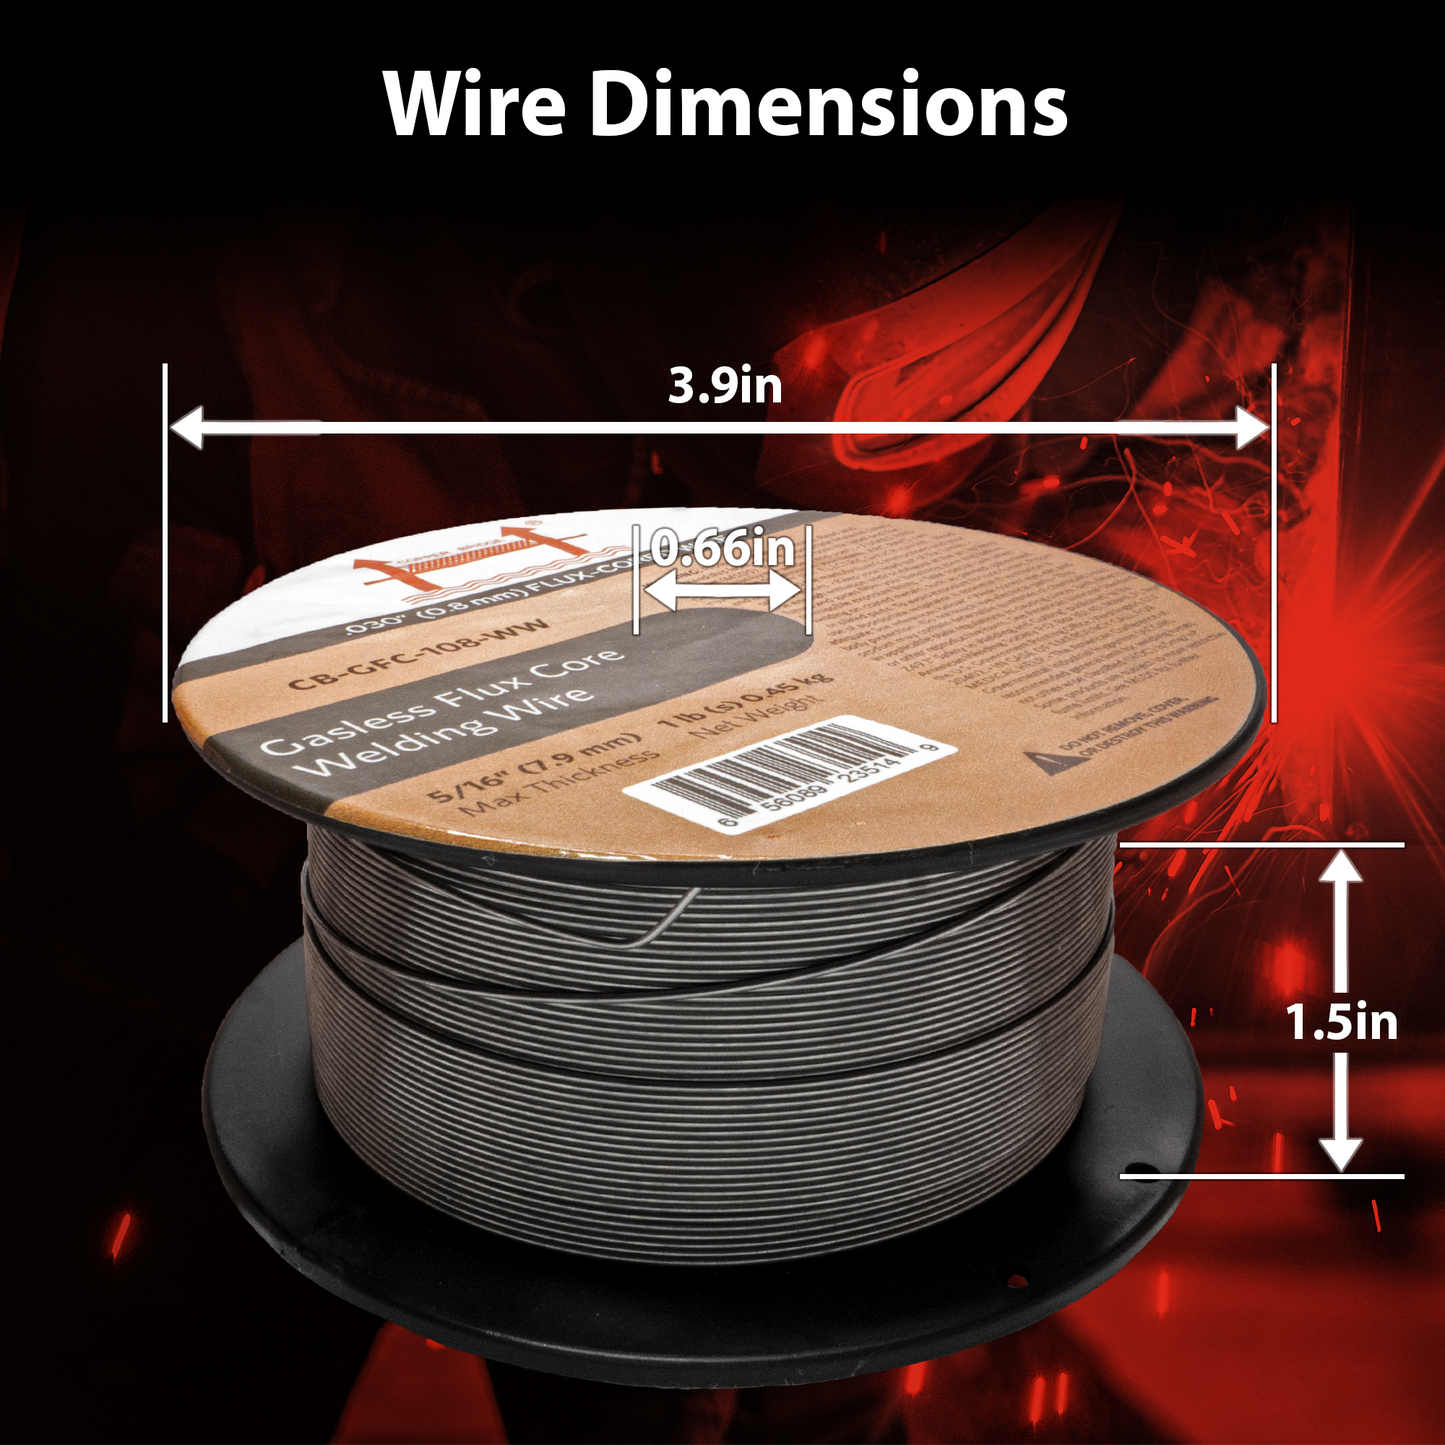 Copper Bridge E71T-GS 1Lb. Gasless Flux Core Welding Wire .030” (0.8 mm)